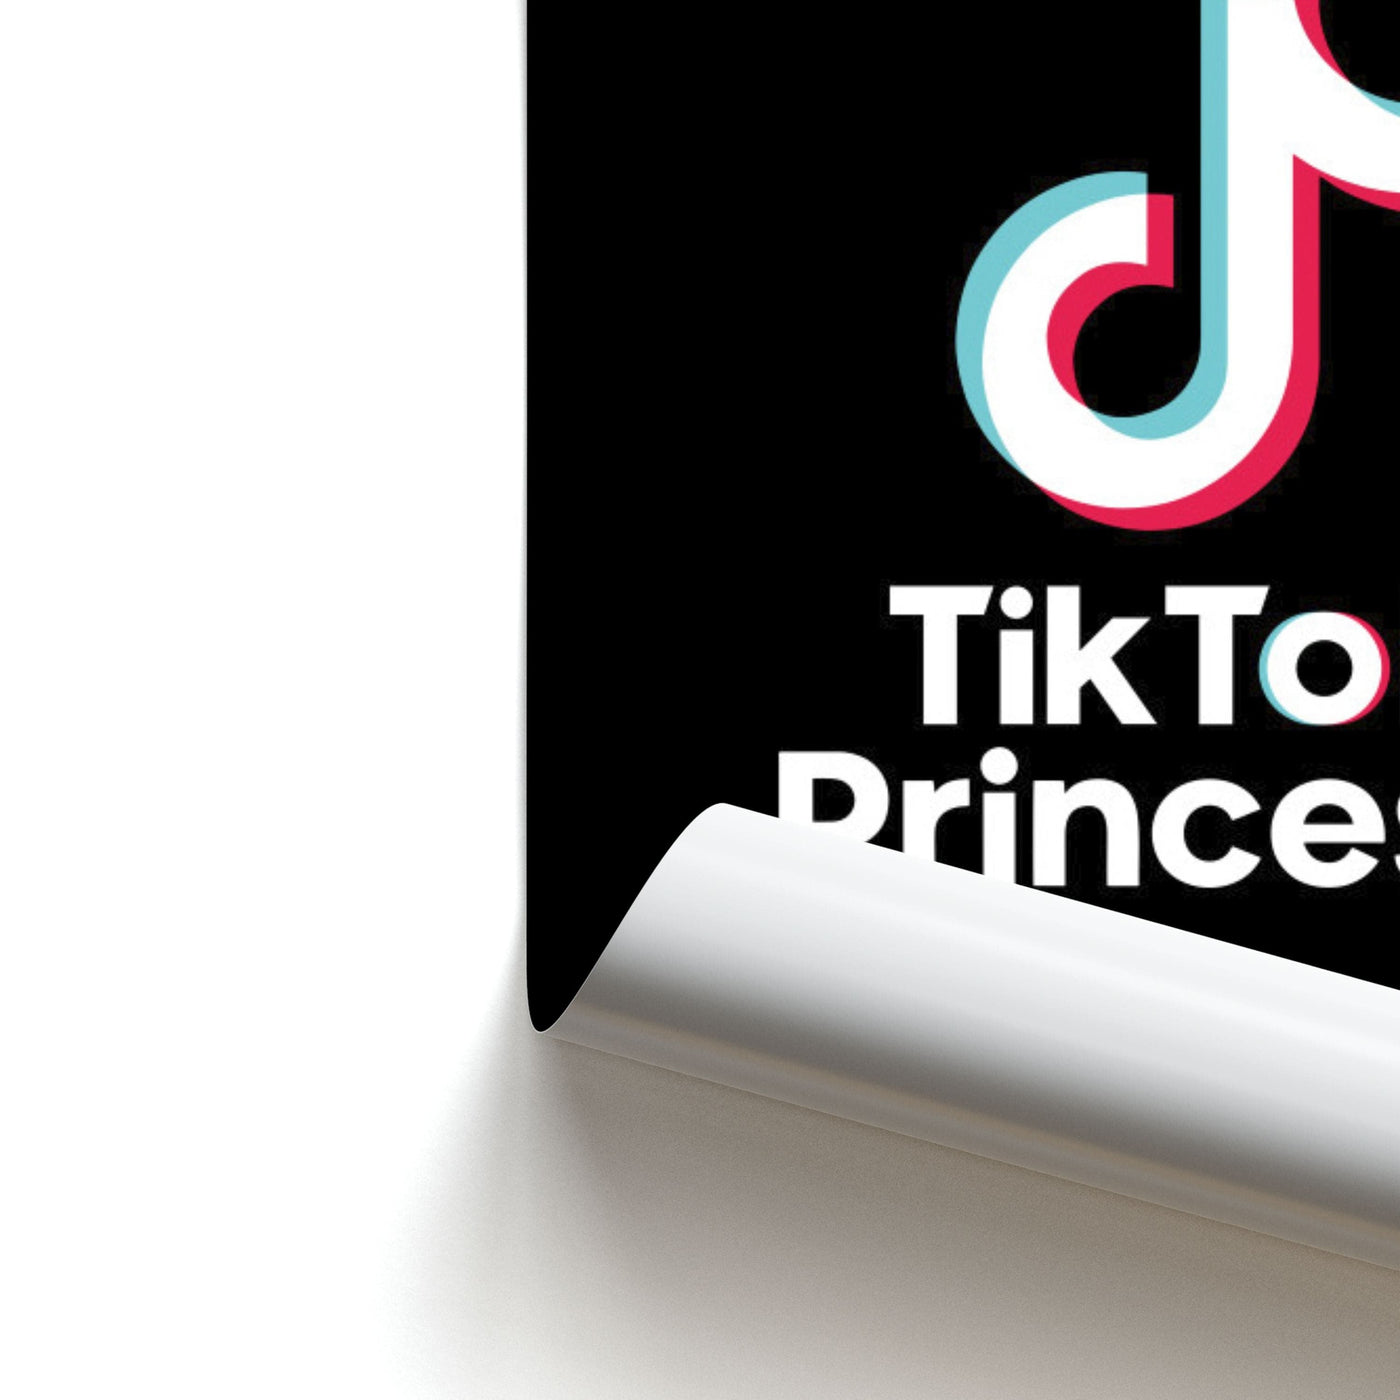 TikTok Princess Poster